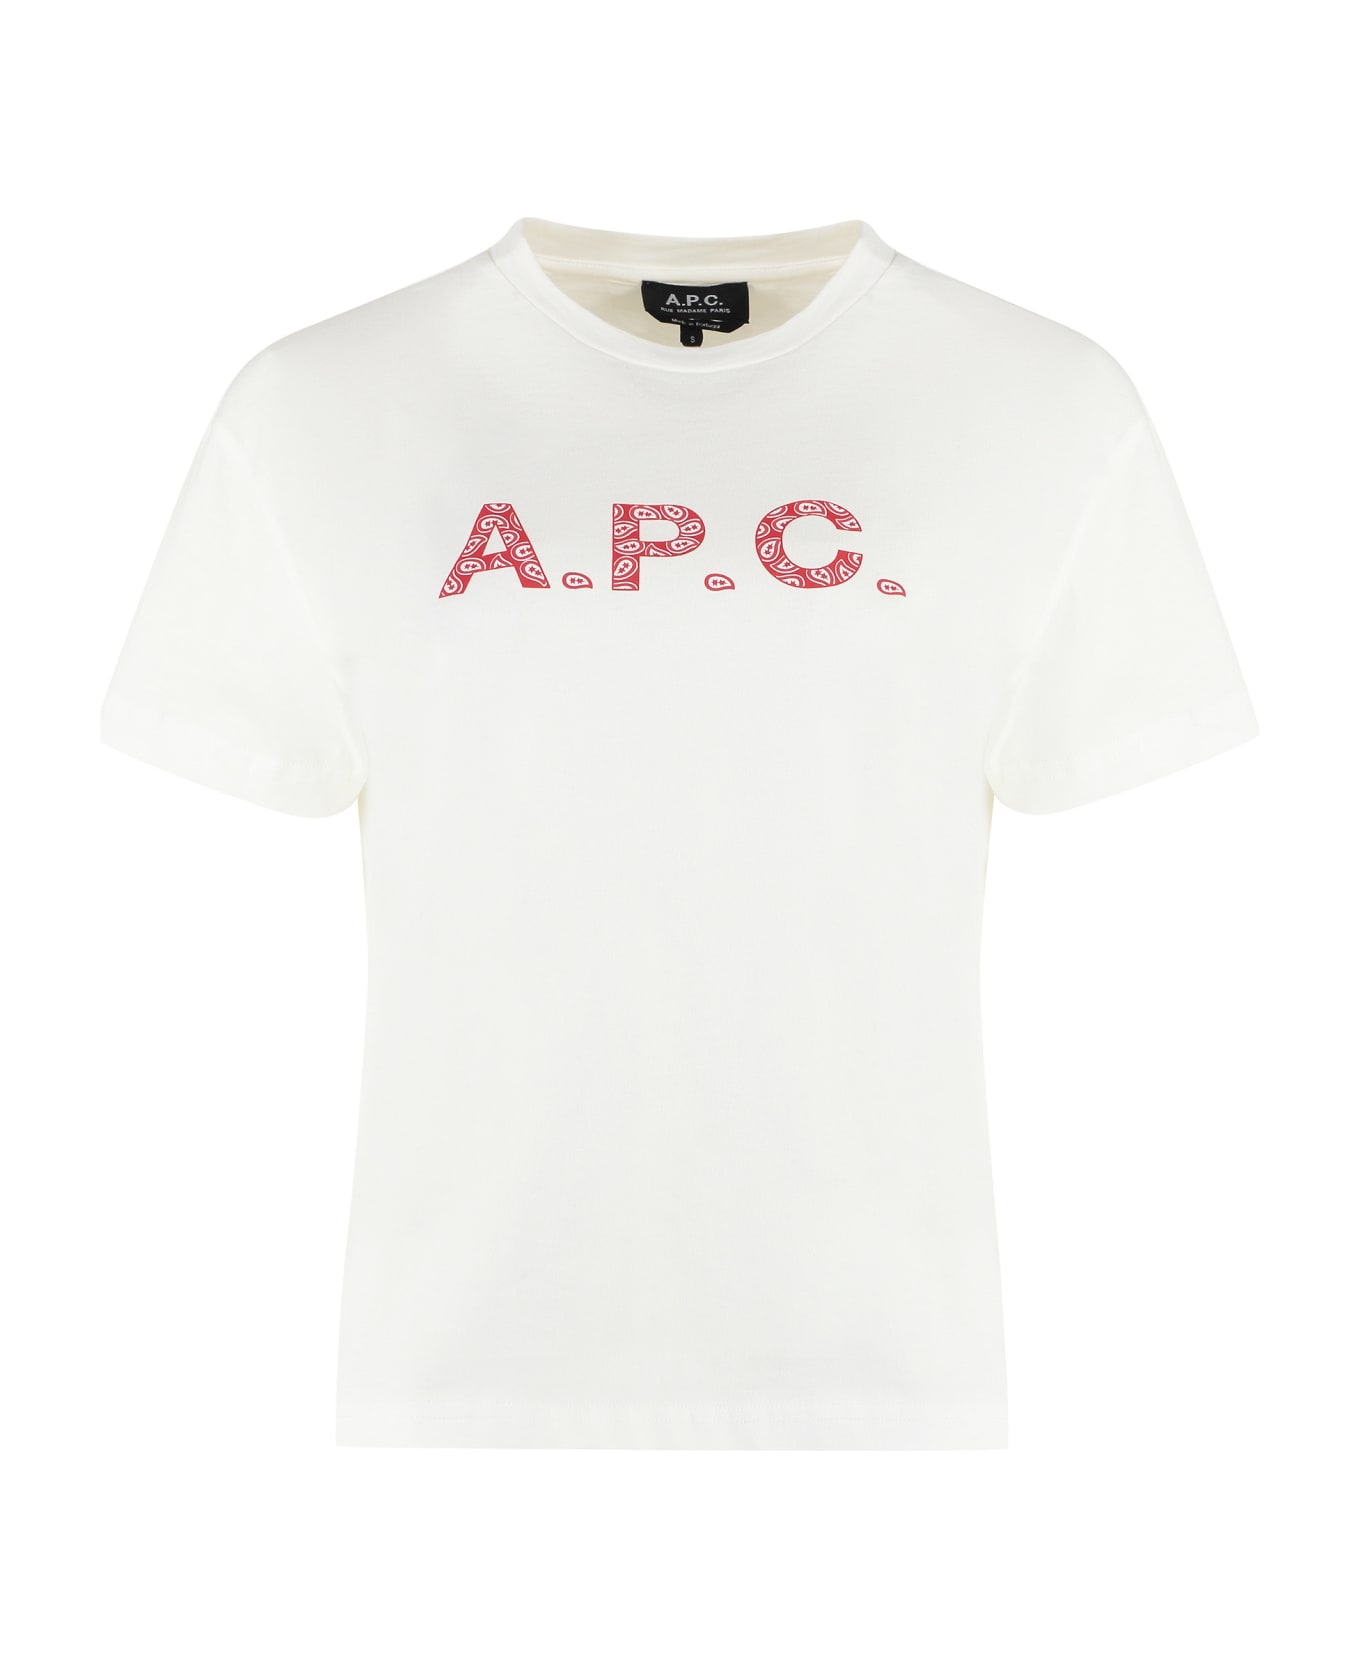 A.P.C. Cotton Crew-neck T-shirt - White Tシャツ